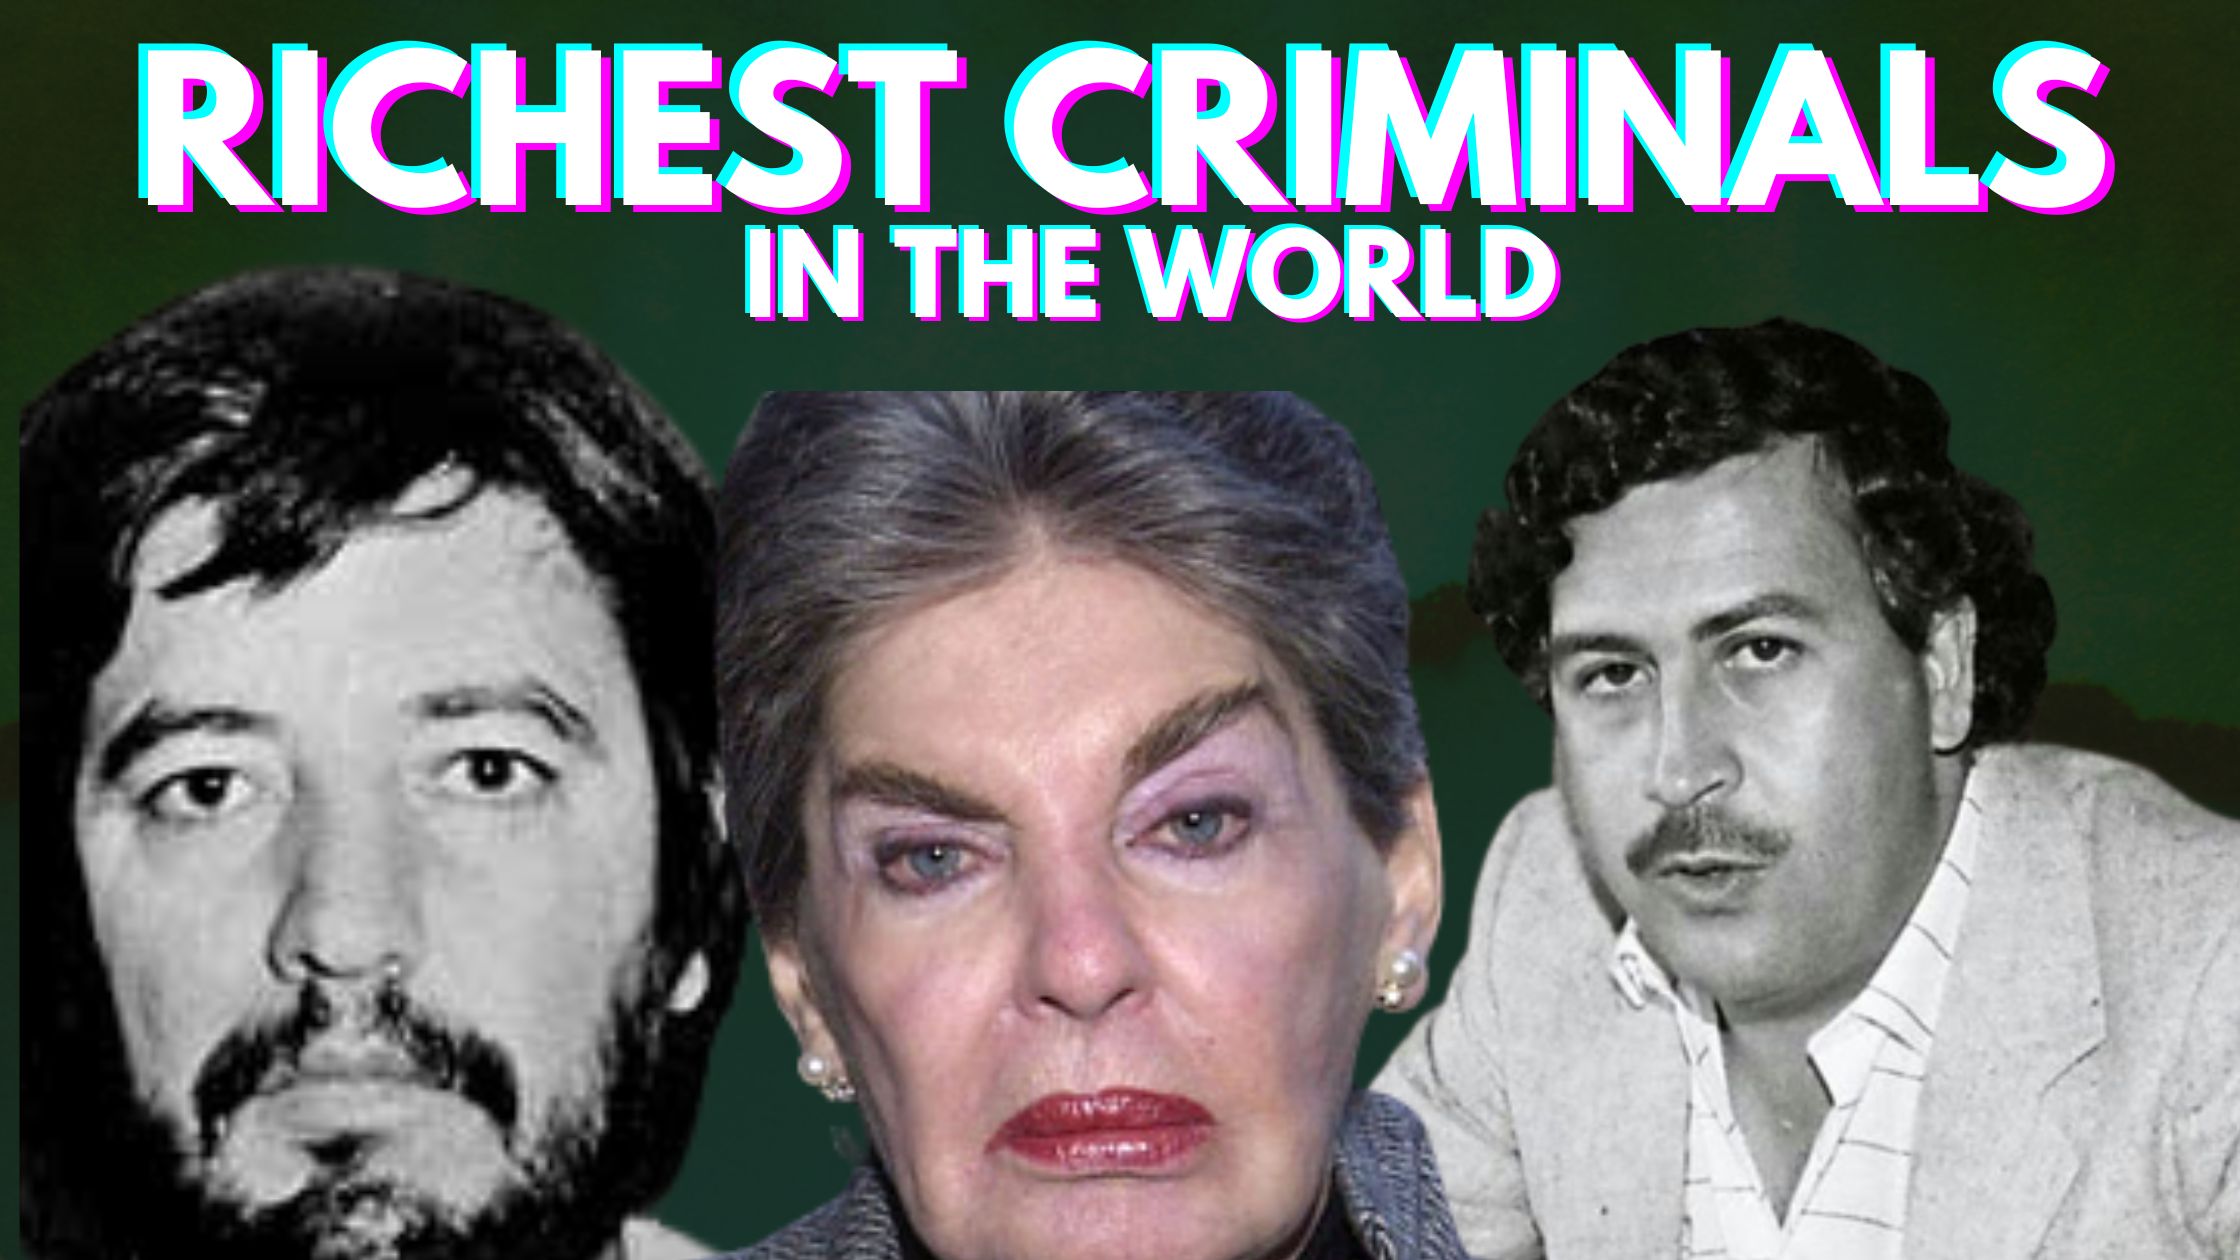 Richest Criminals in the World